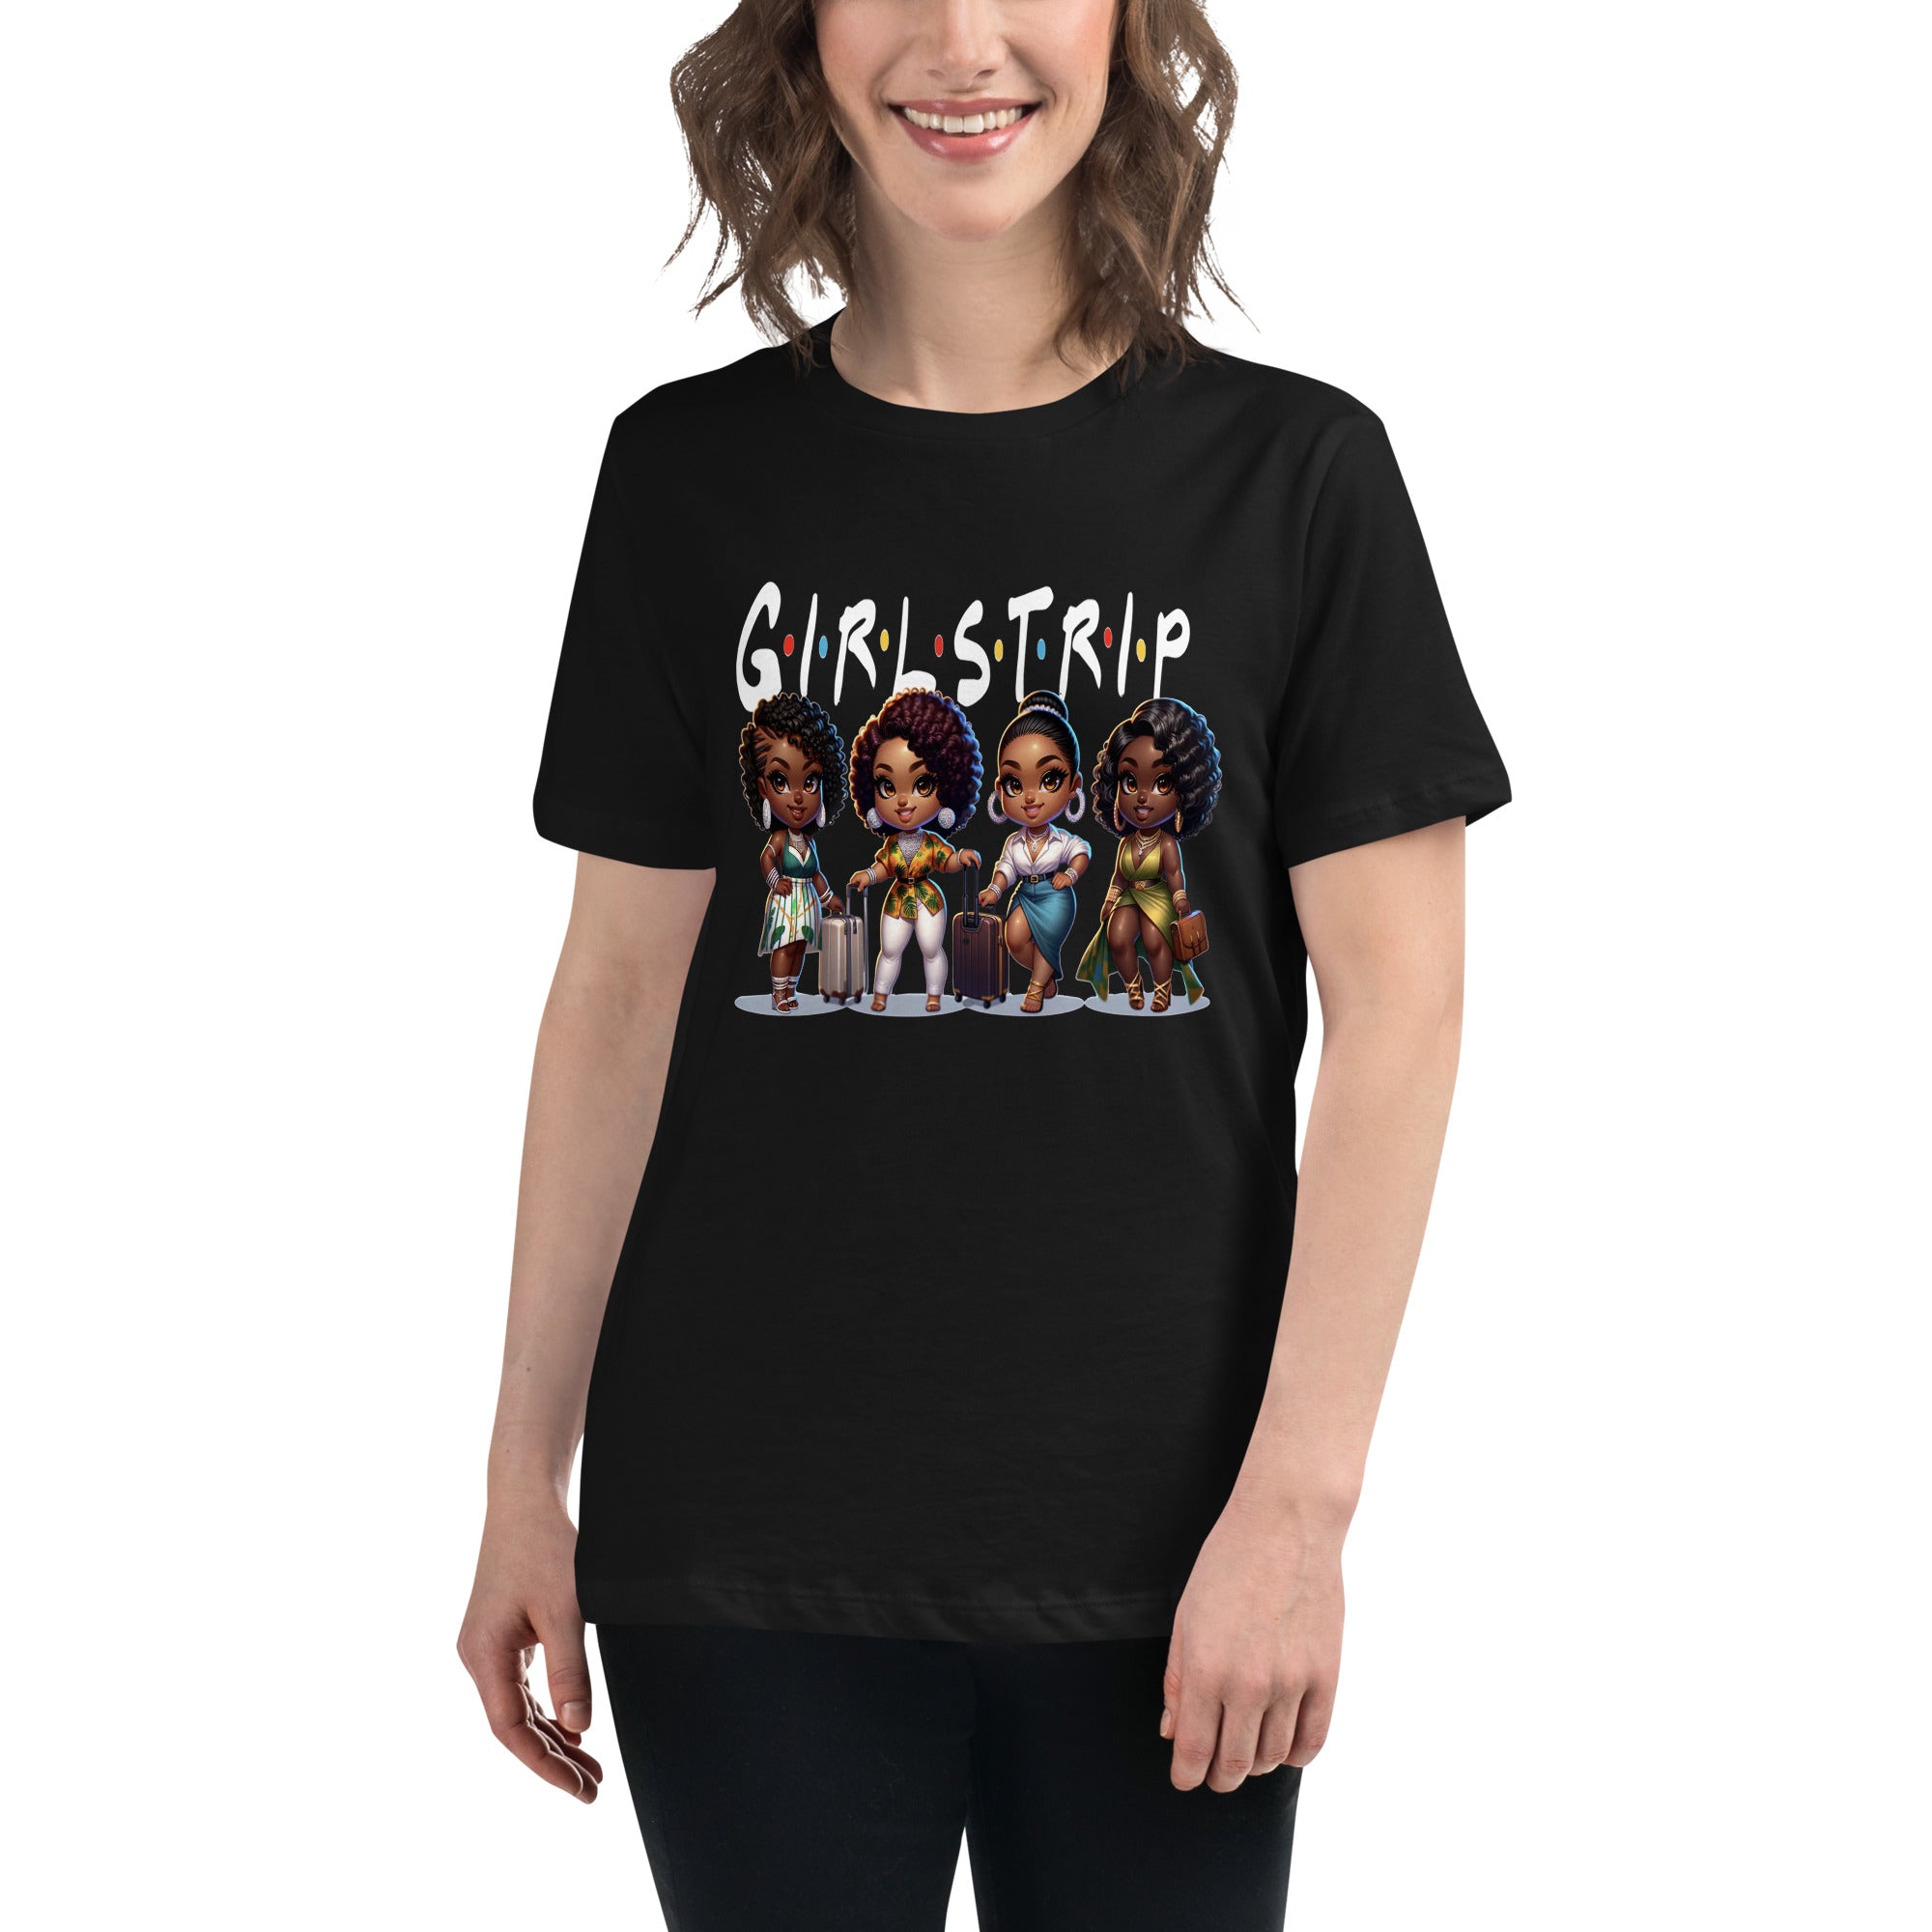 Women's Girls Trip T-Shirt